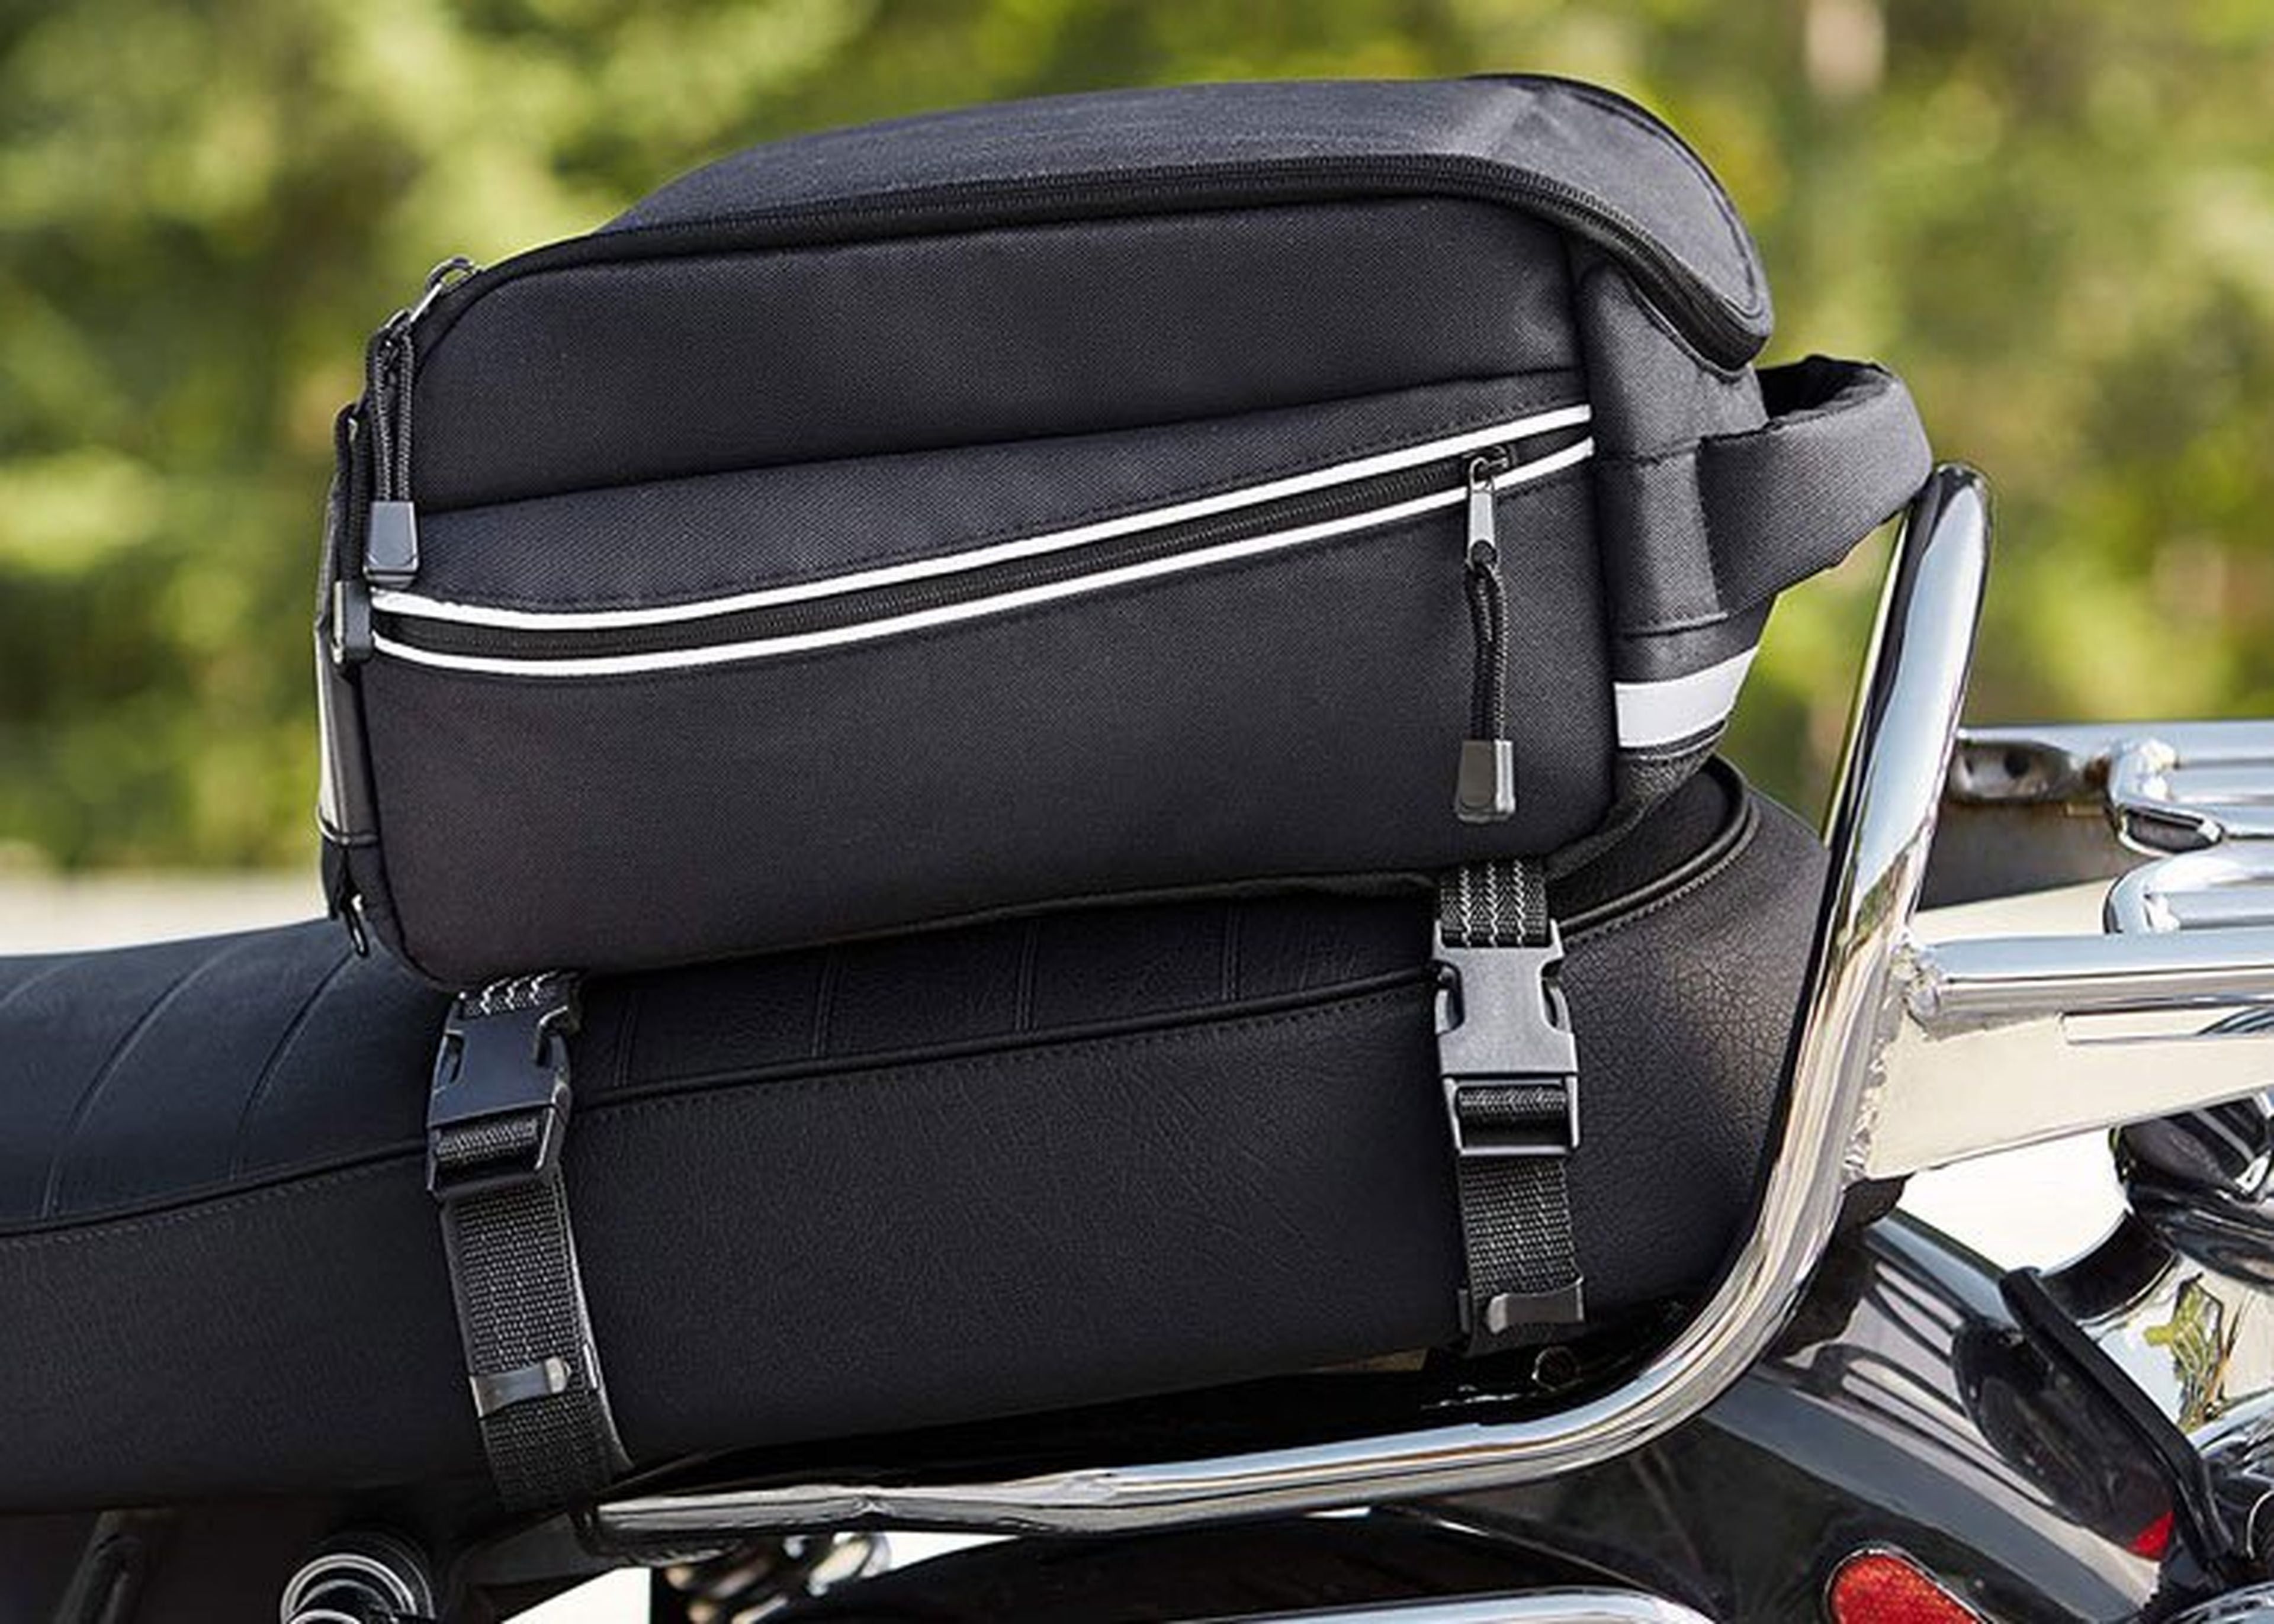 Esta maleta de moto se convierte en mochila cuando la necesites